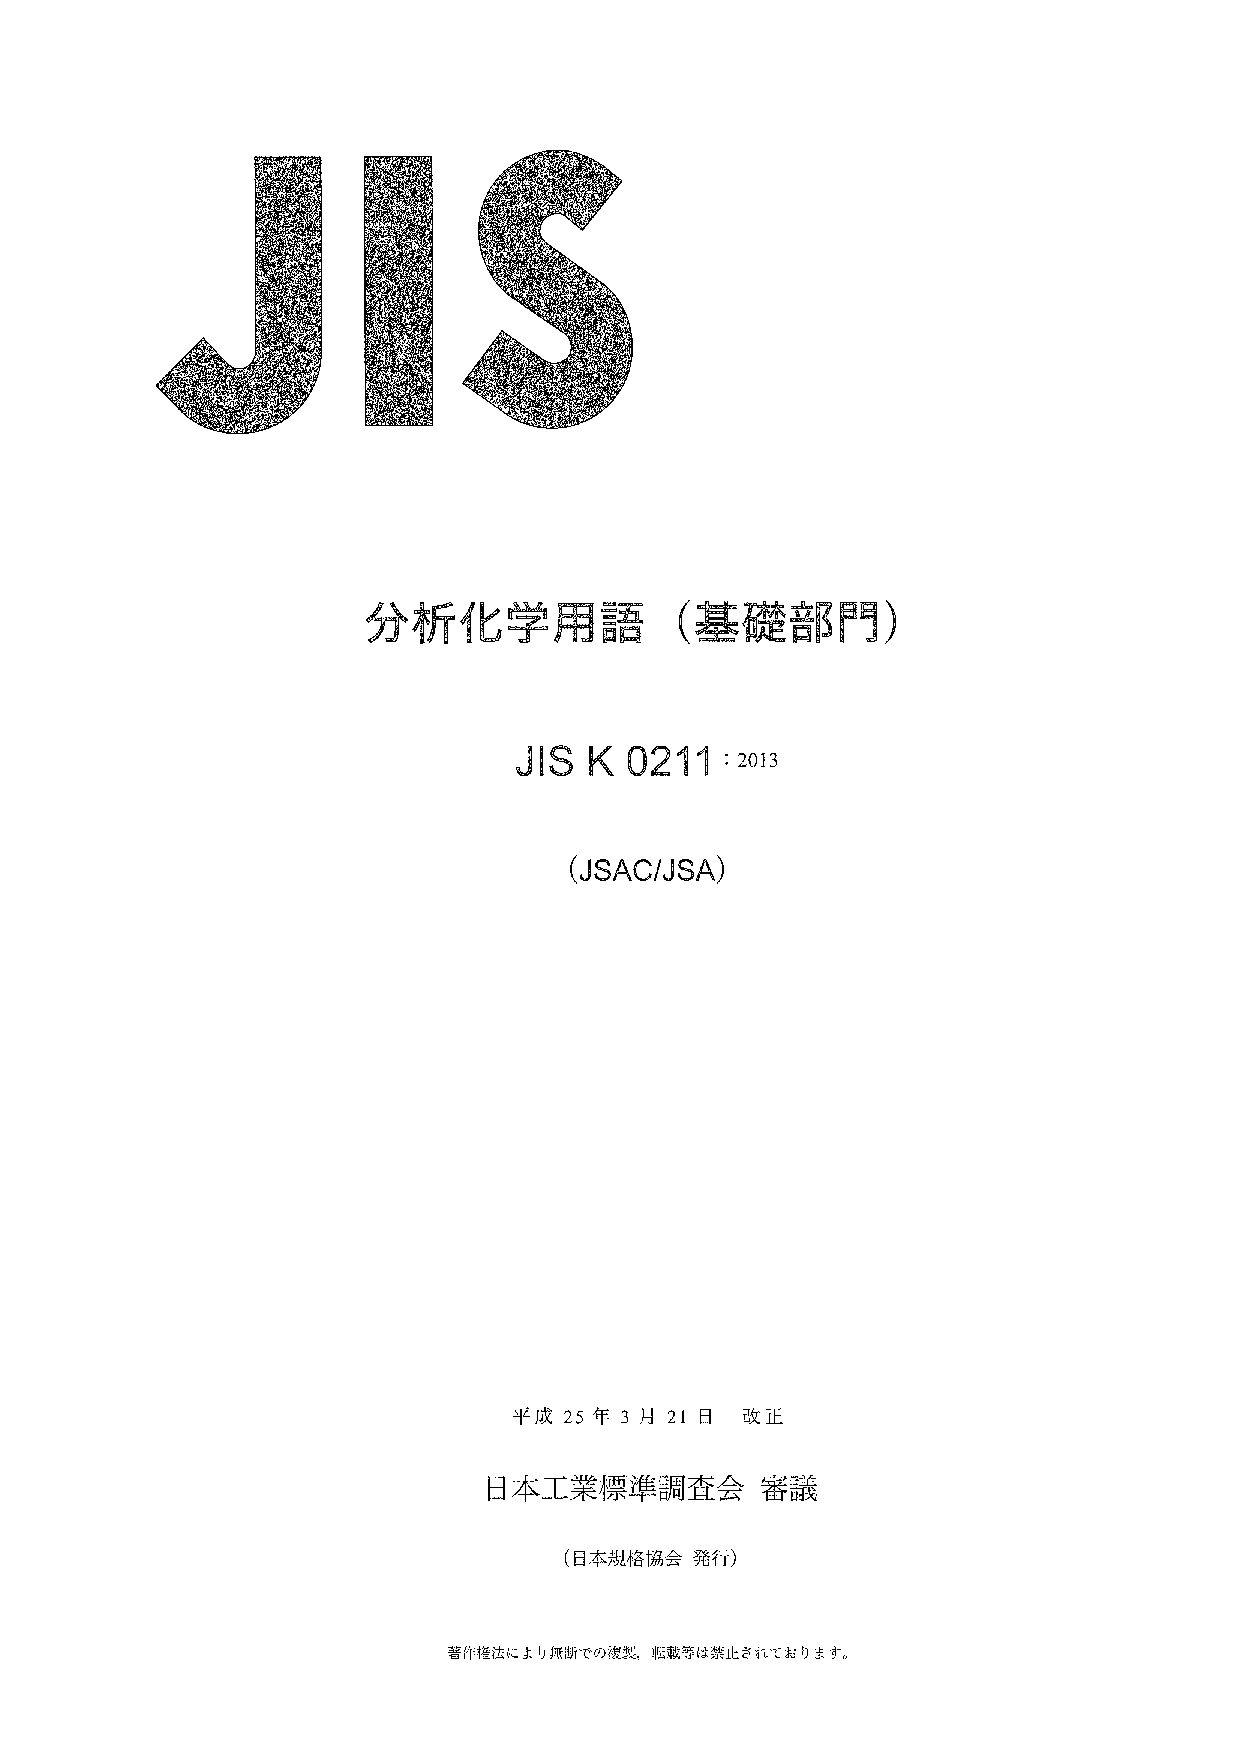 JIS K 0211:2013封面图